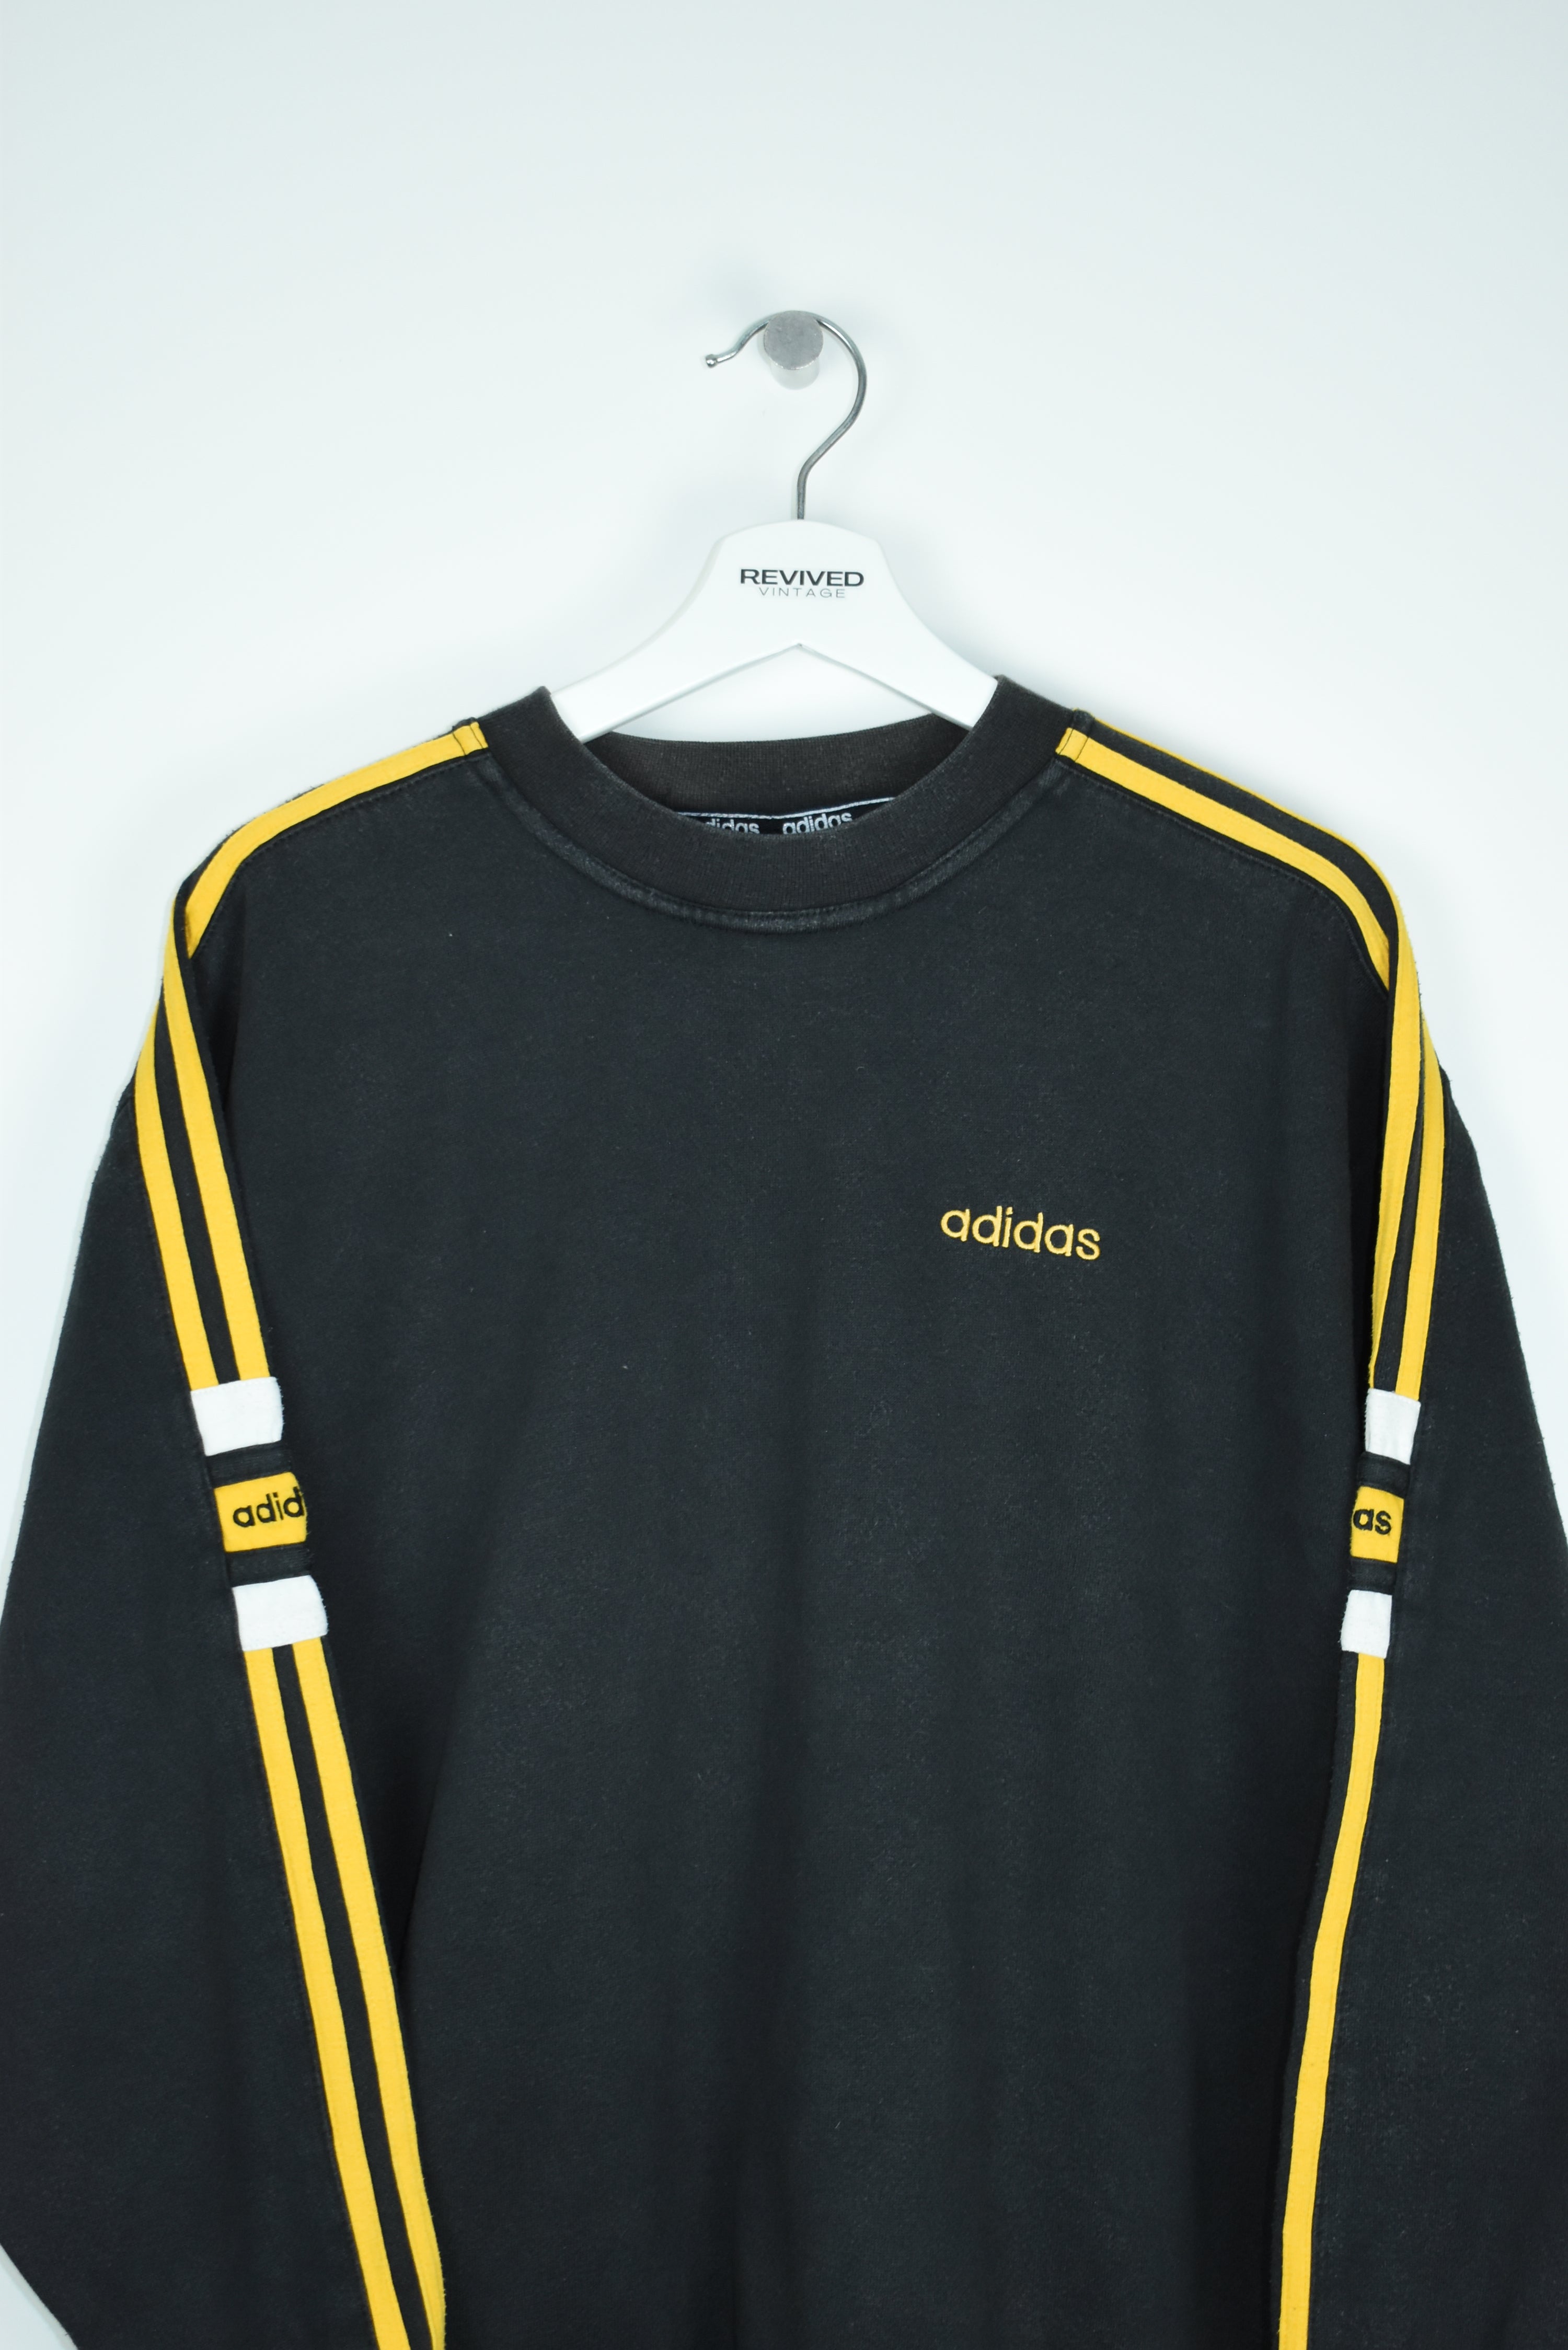 Vintage Adidas Embroidery Logo Sweatshirt Medium